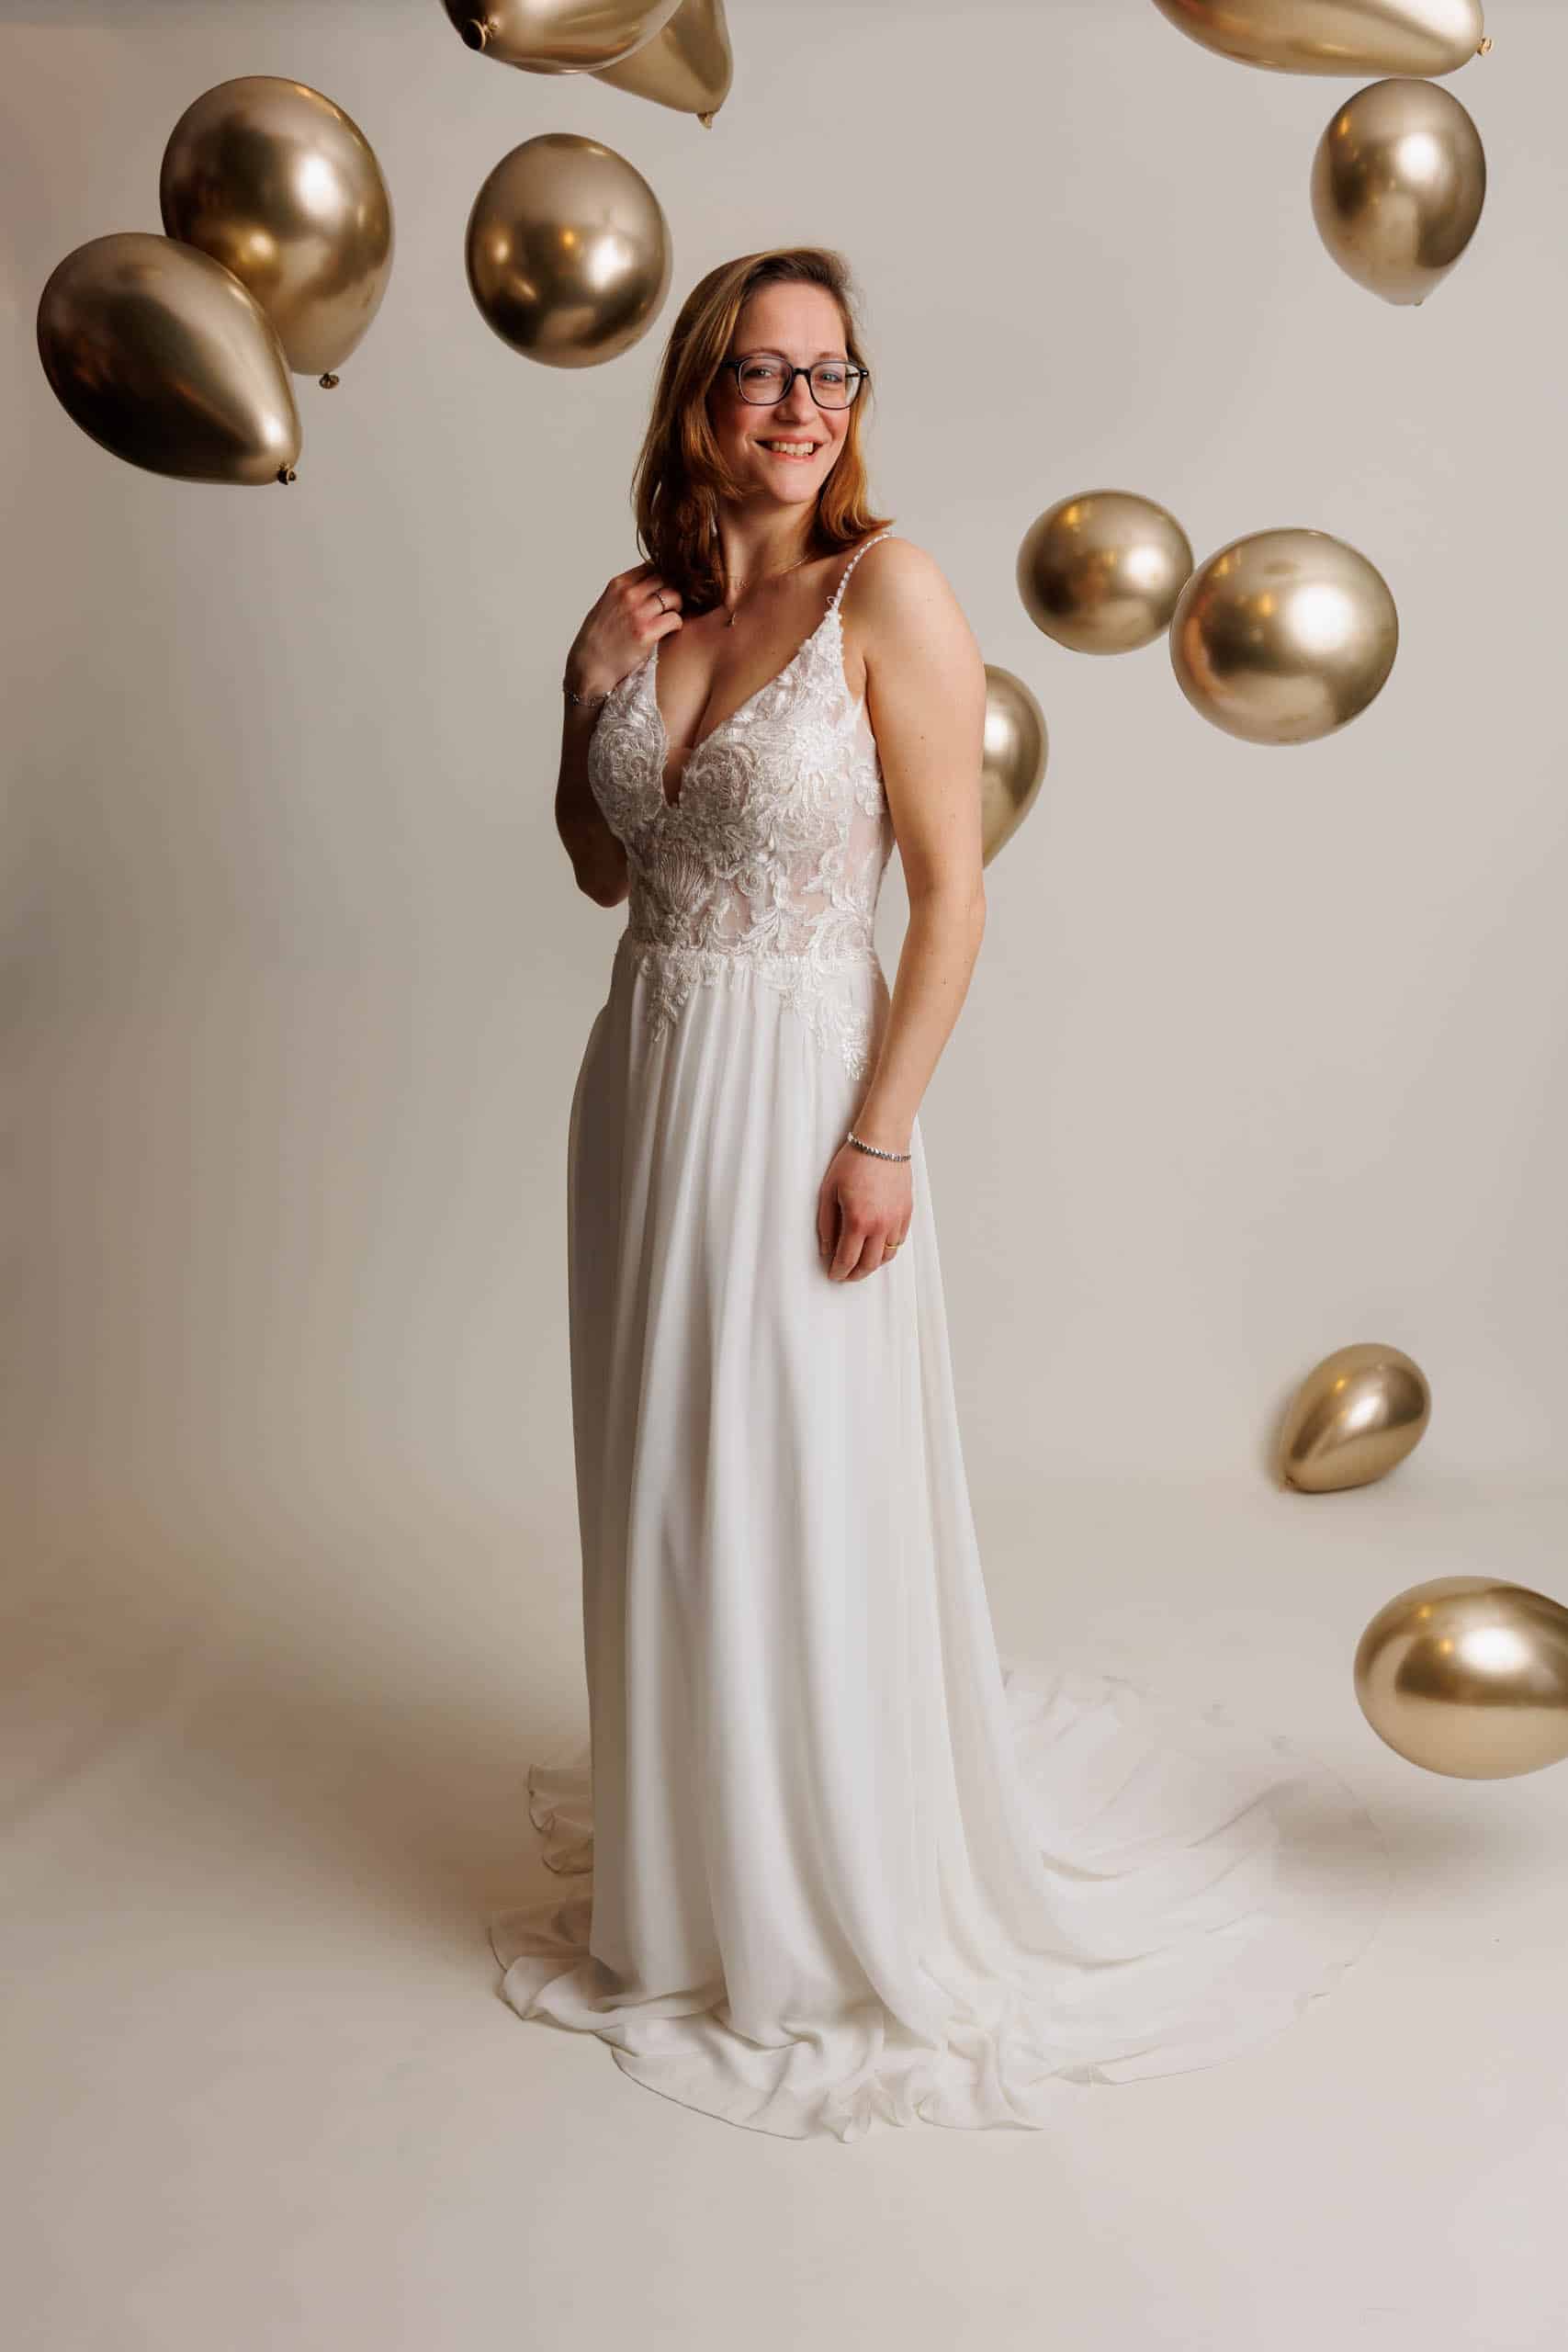 Een vrouw die voor de lol trouwjurken past, poserend voor gouden ballonnen.